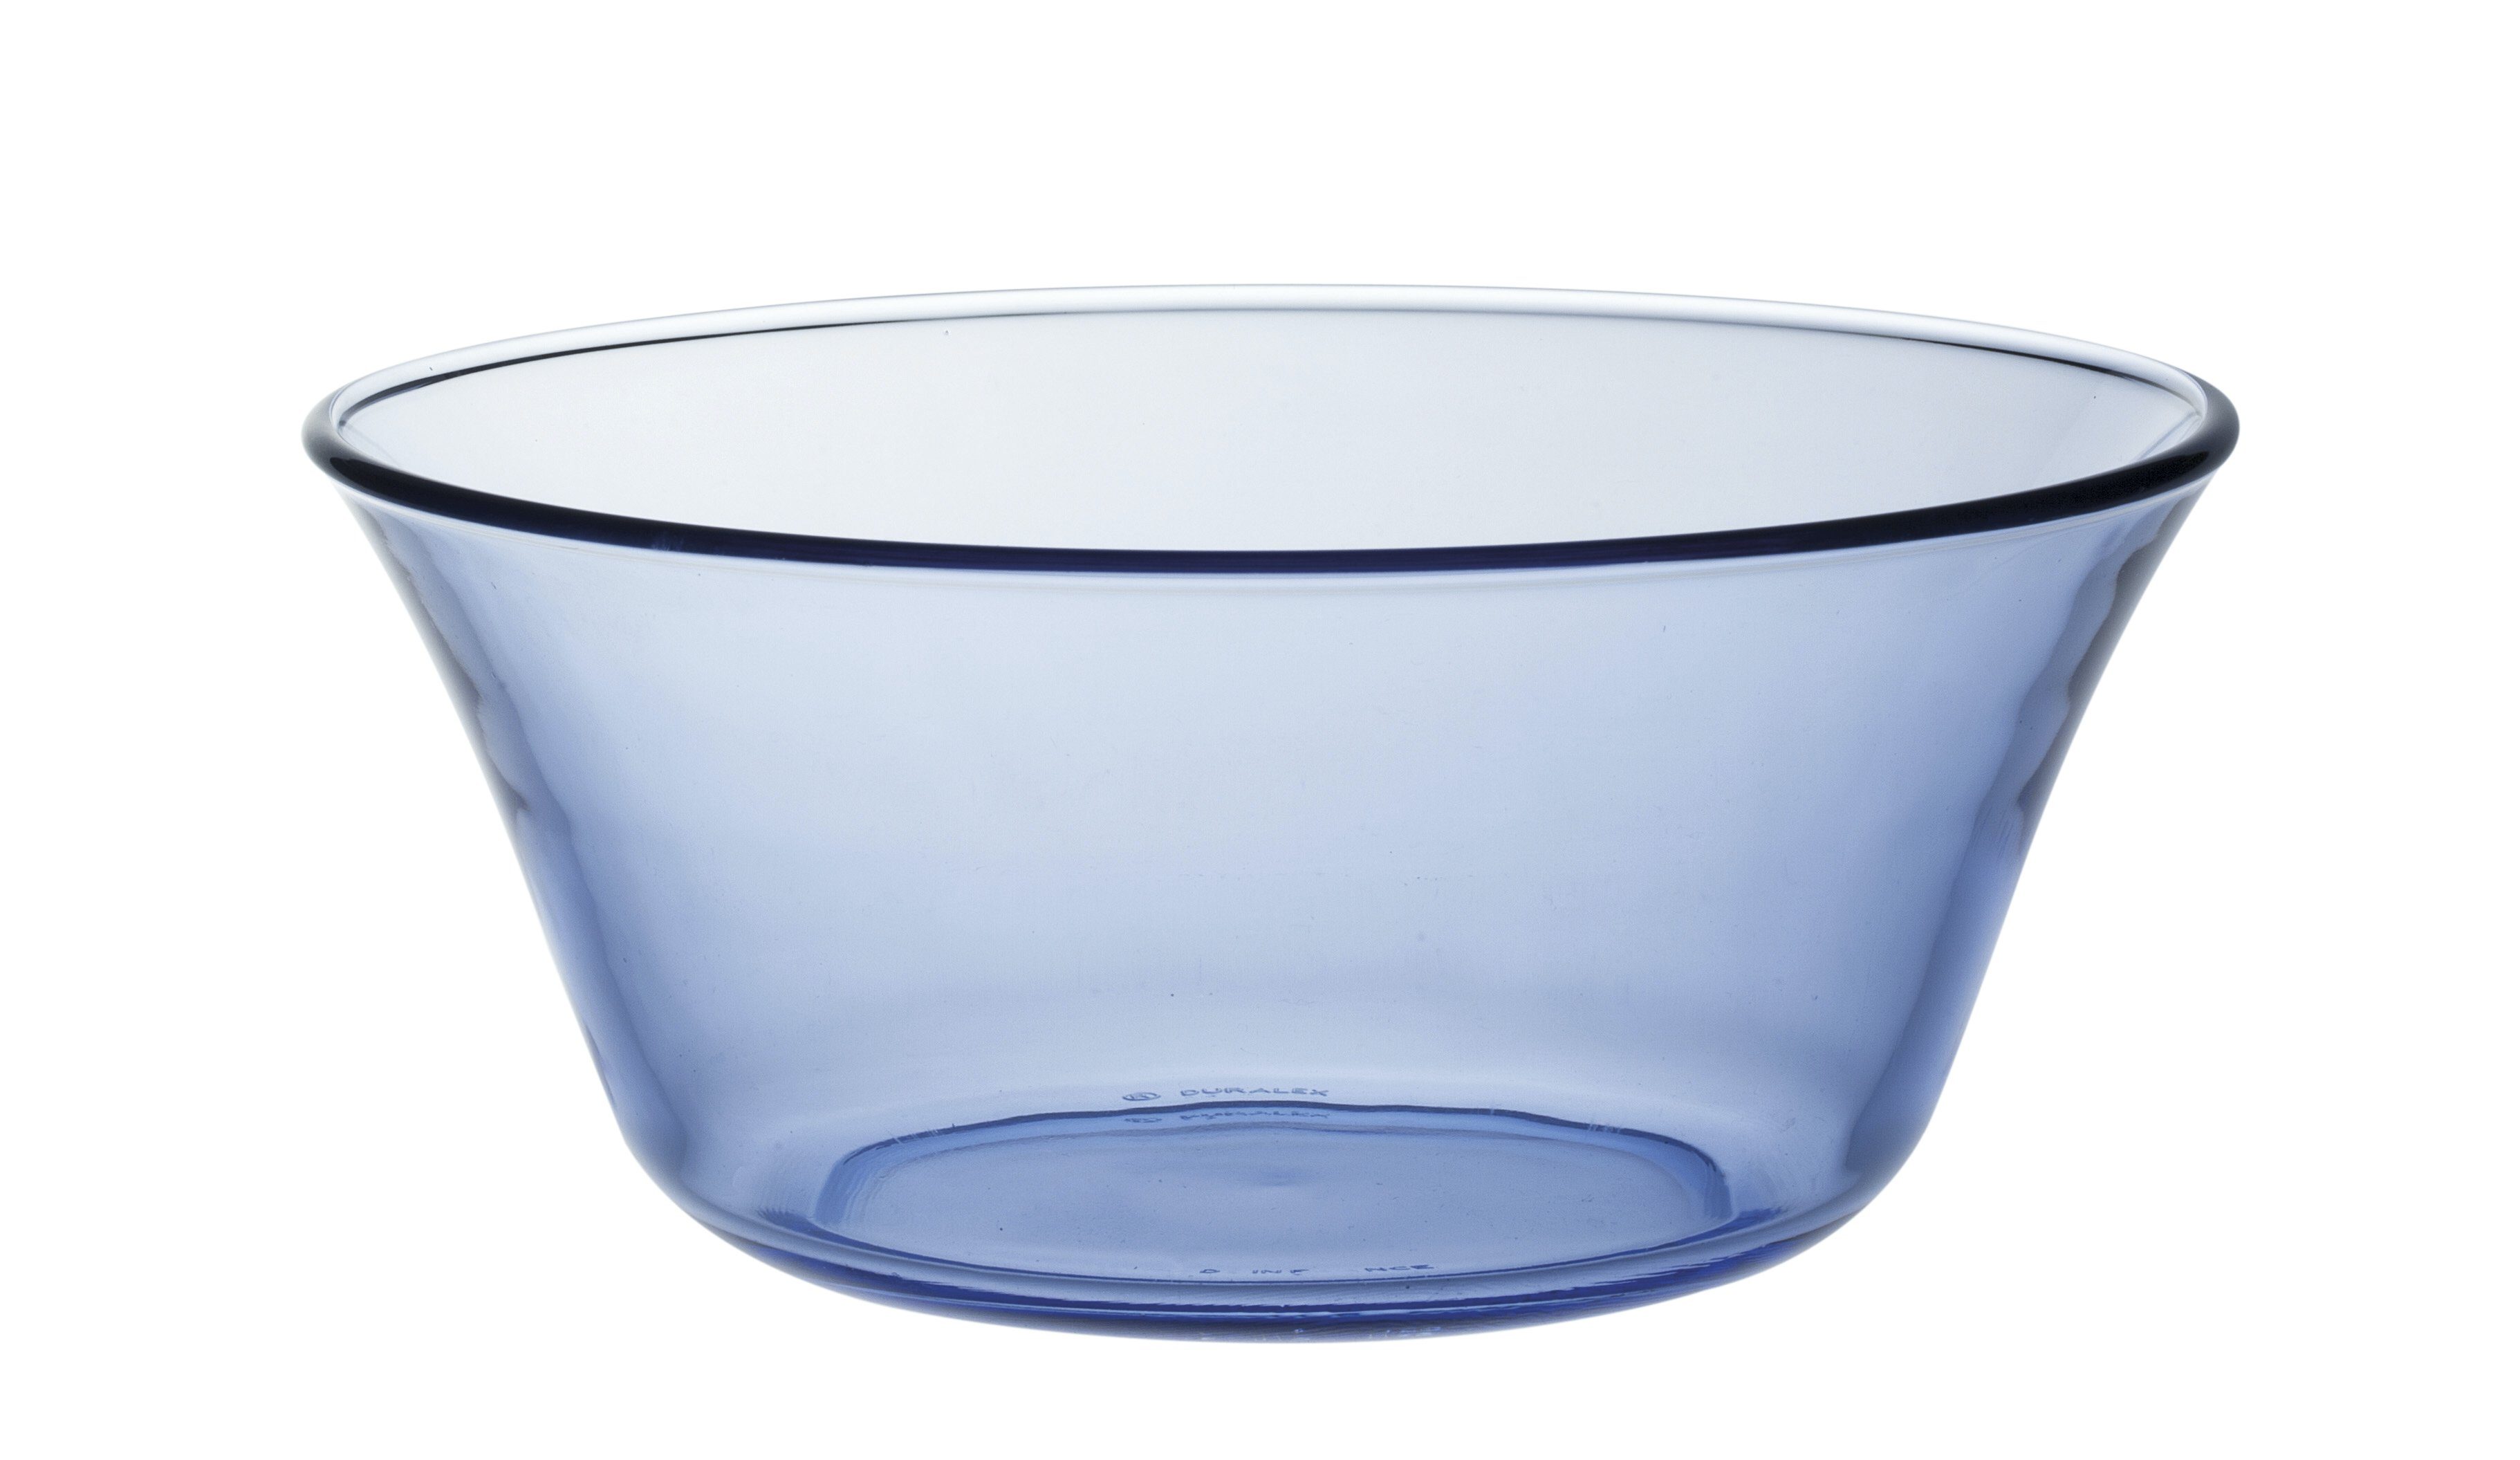 Duralex Salatschüssel »Lys Marine«, Glas, Schale Salatschale Schüssel 17cm  910ml Glas blau 1 Stück online kaufen | OTTO